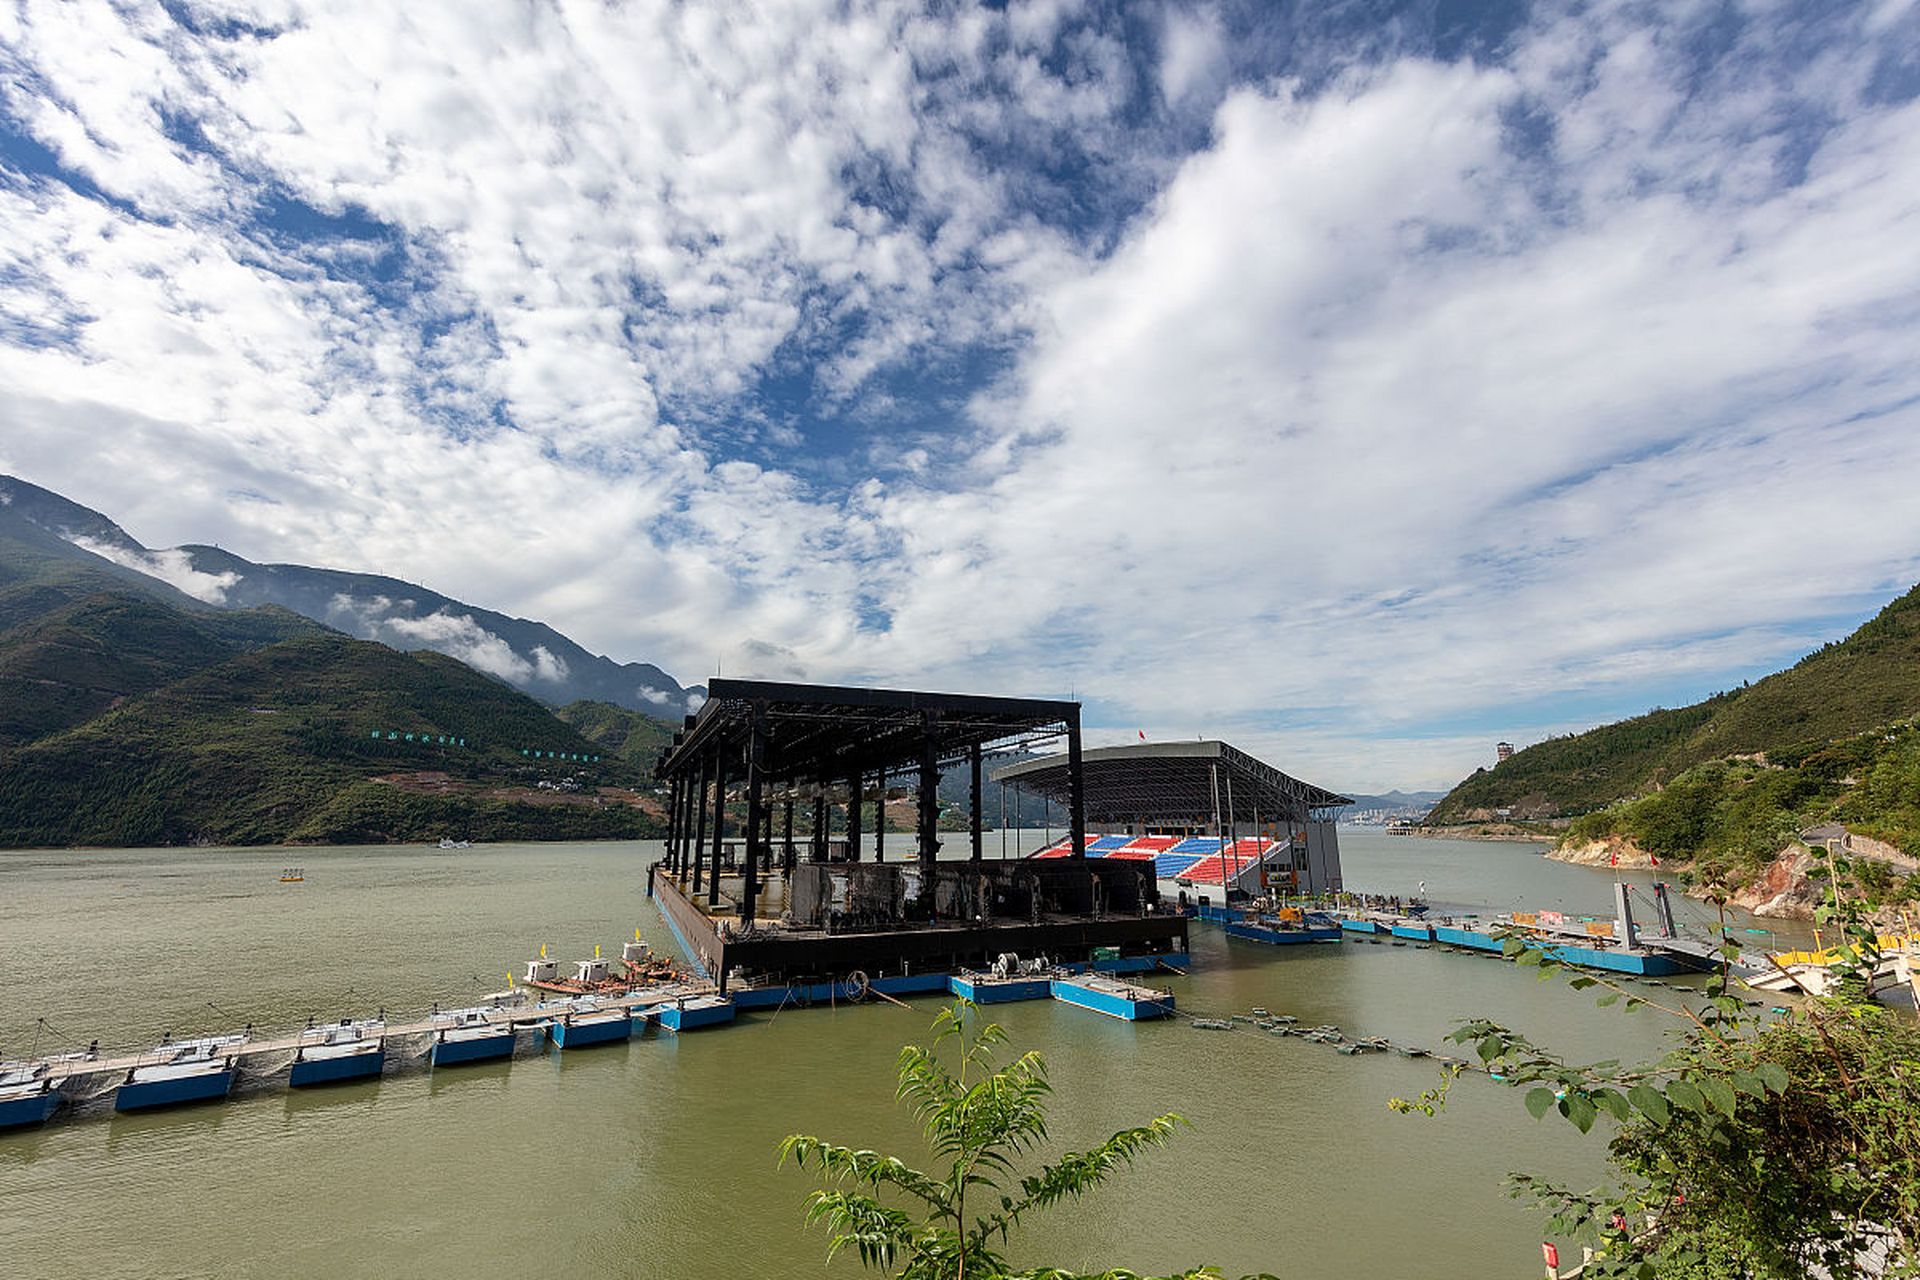 万峰湖红椿码头 万峰湖红椿码头位于兴义市万峰湖景区内,是马岭河的